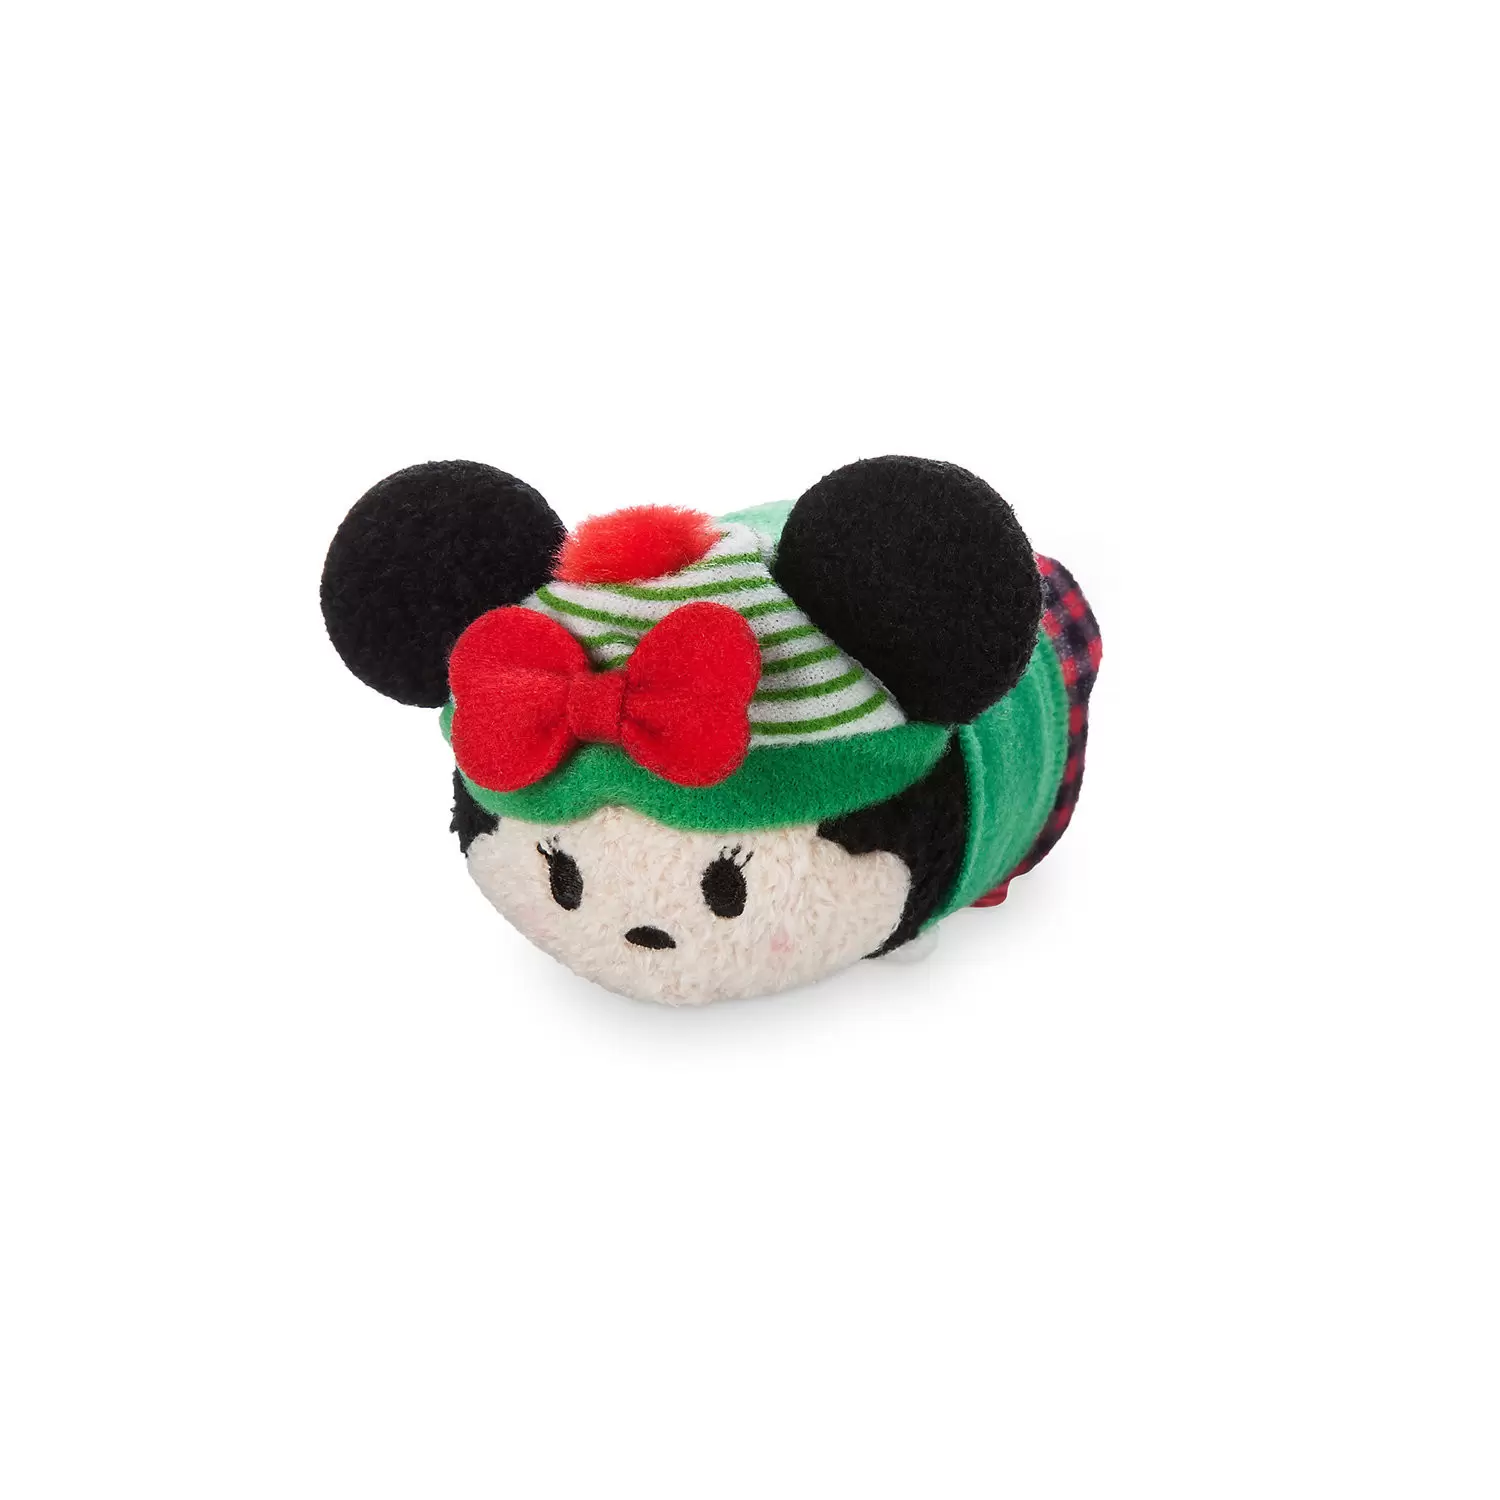 Mini Tsum Tsum Plush - Minnie Christmas Holiday